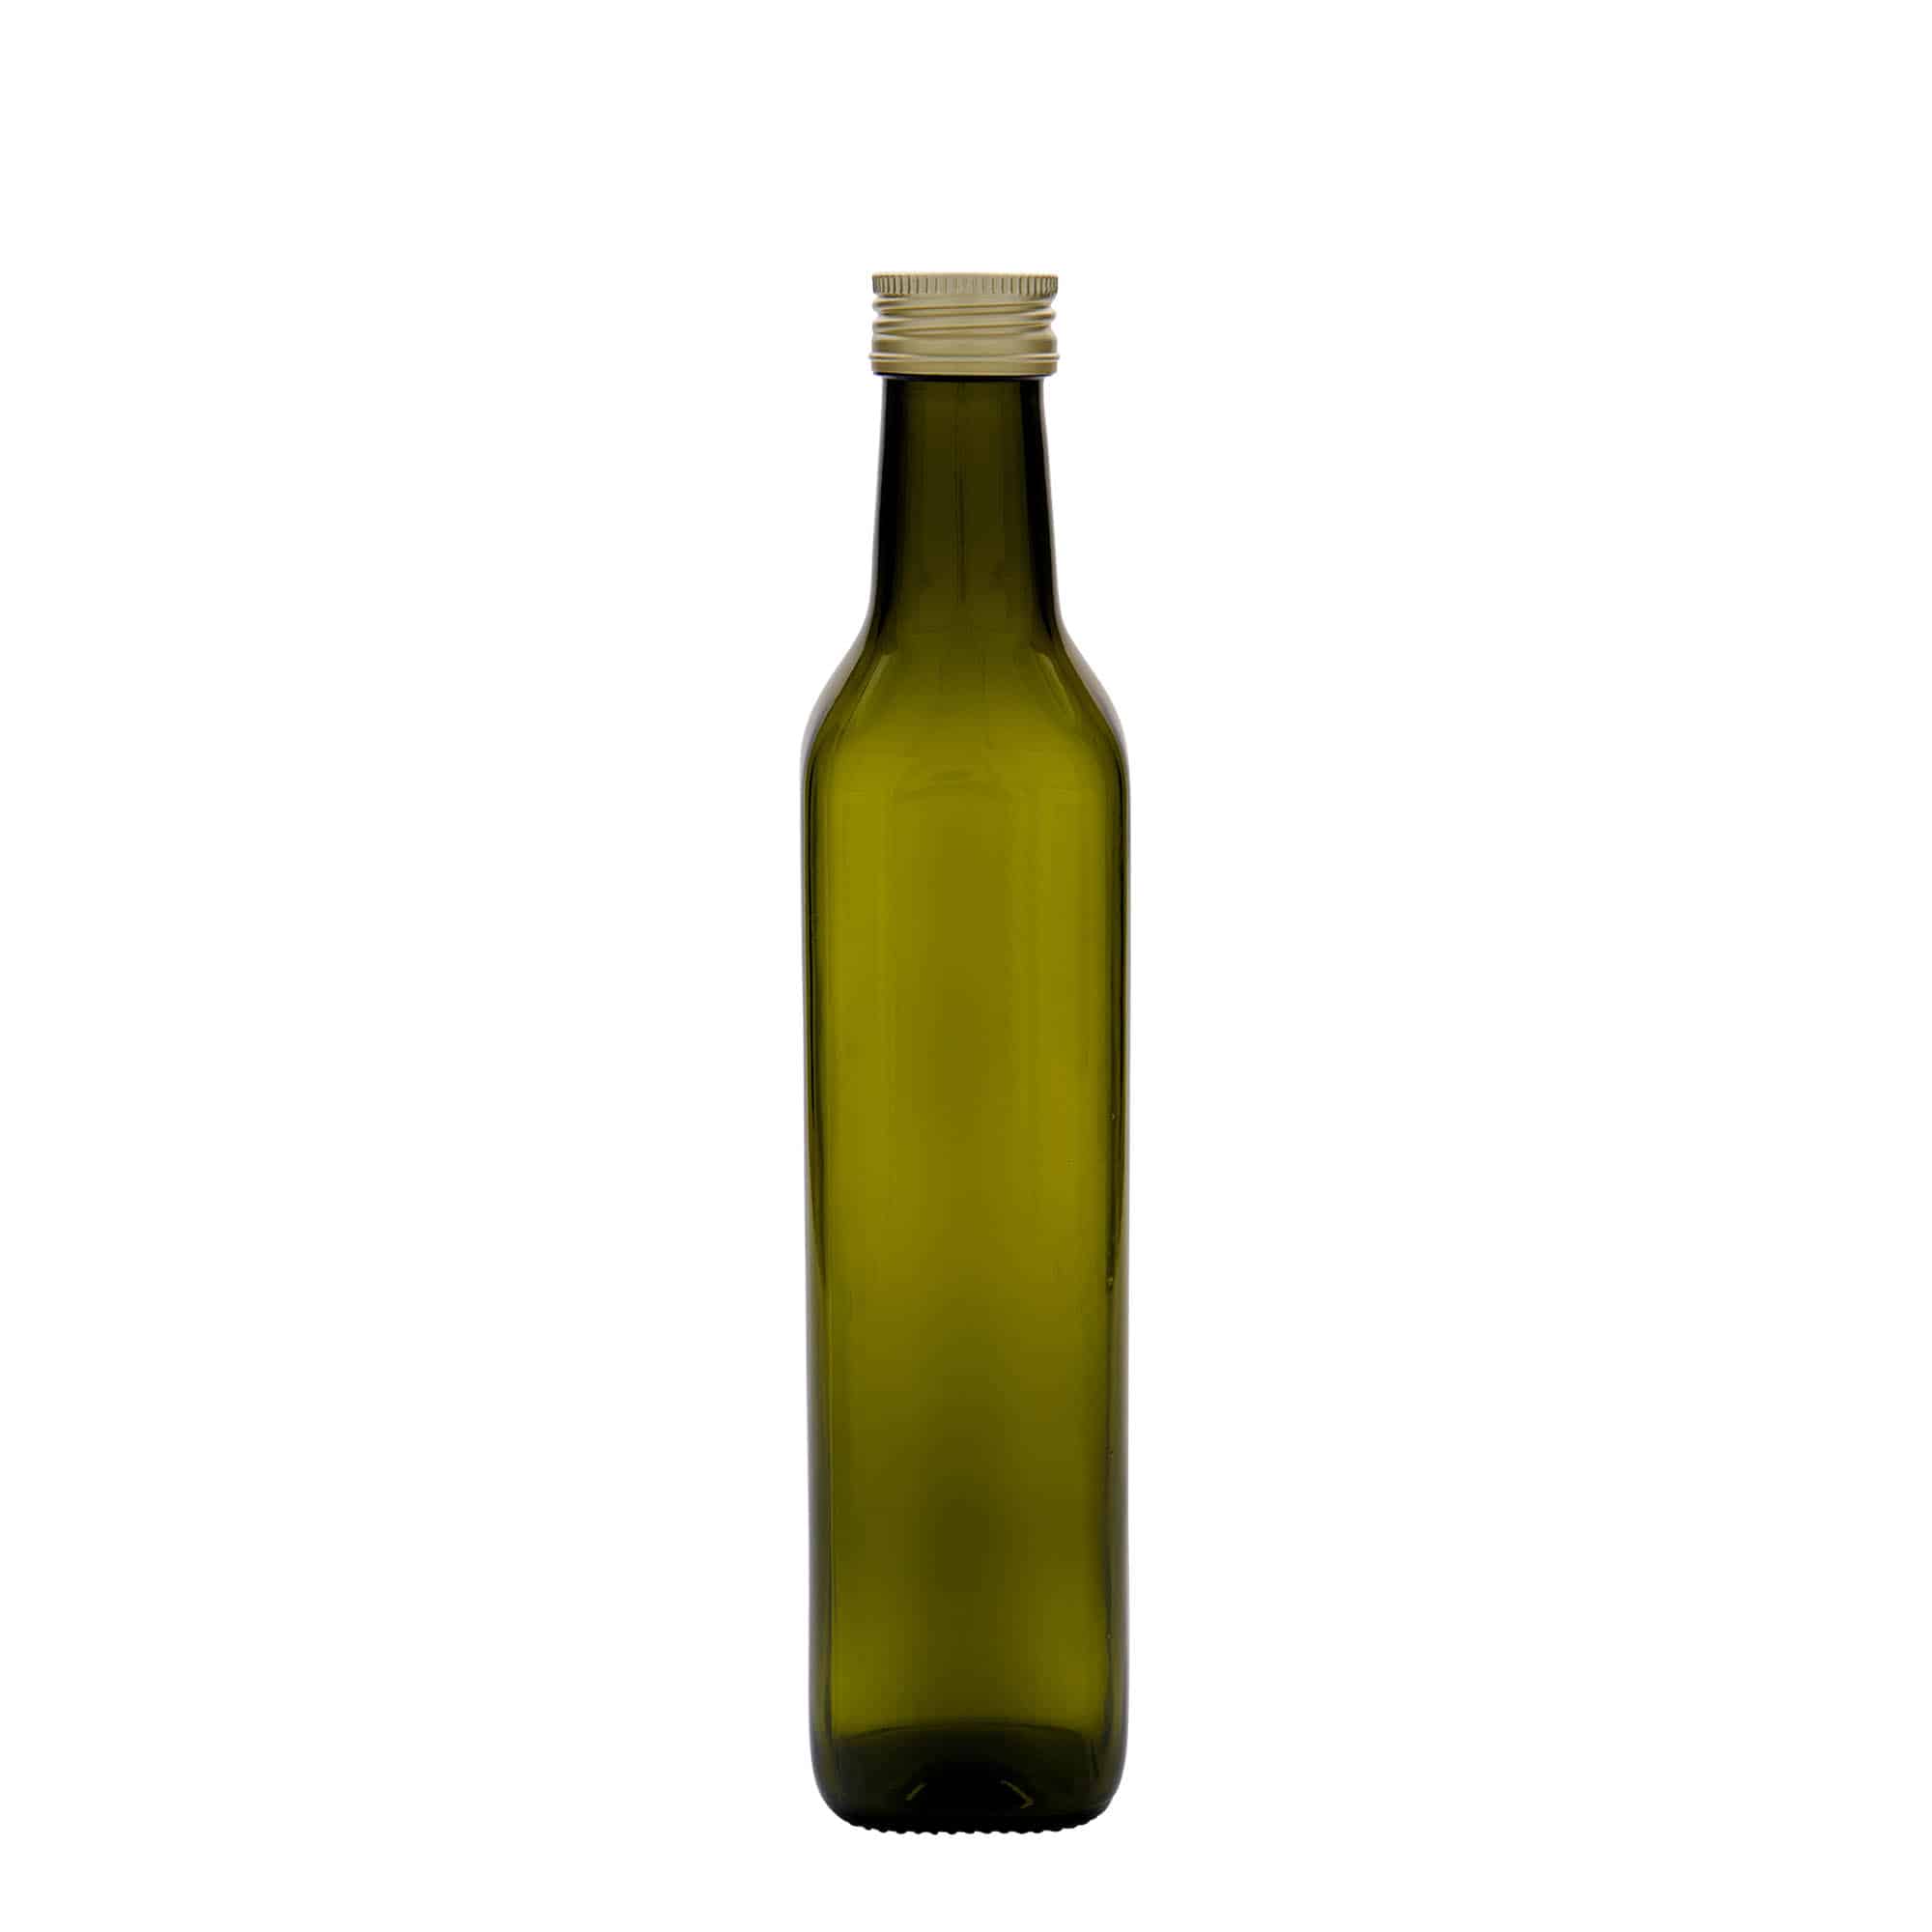 500 ml lasipullo 'Marasca', neliö, antiikinvihreä, suu: PP 31,5